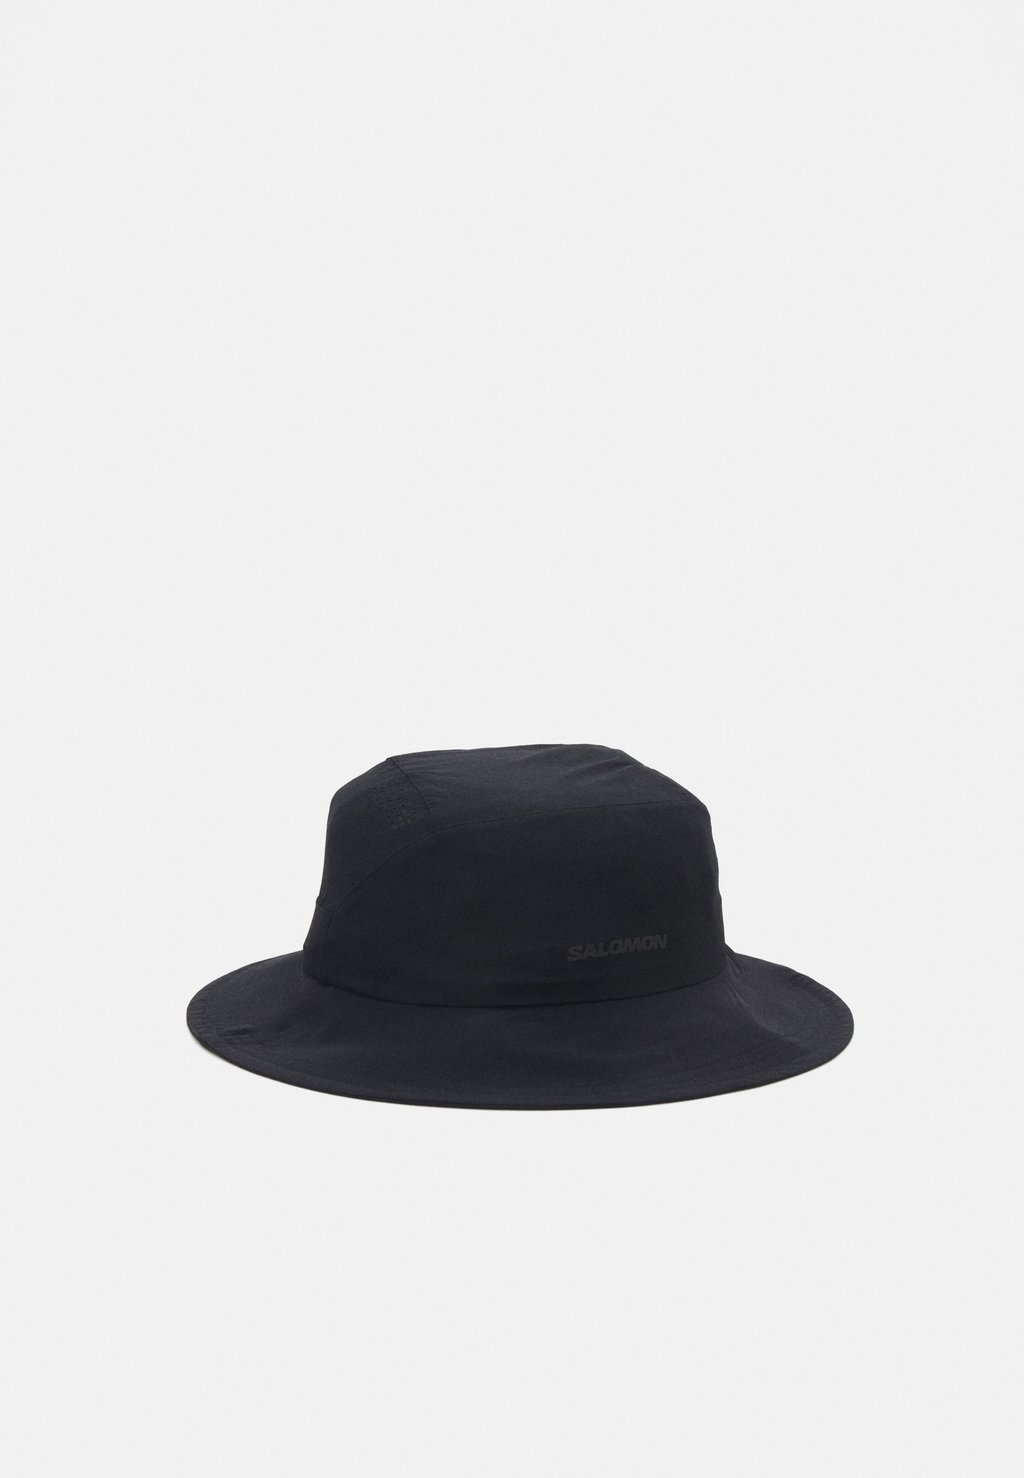 Шапка MOUNTAIN HAT UNISEX Salomon, цвет deep black цена и фото